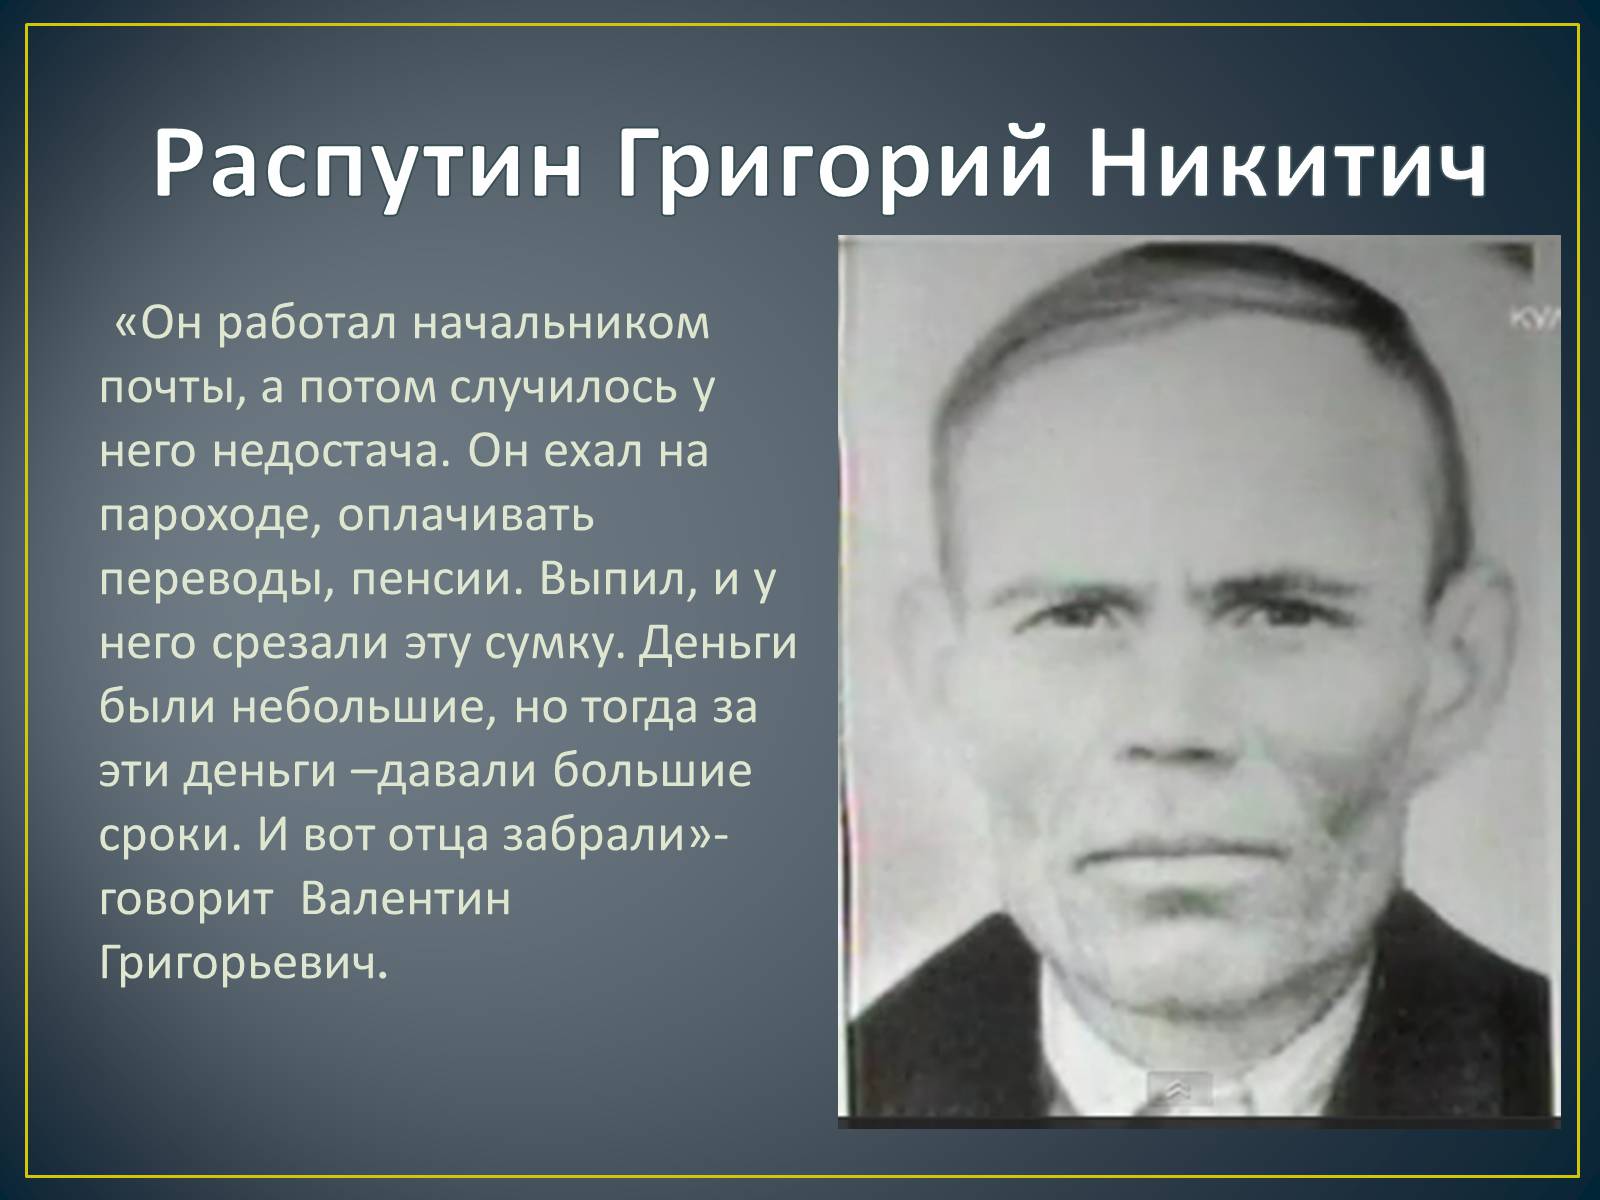 Отец Распутина Валентина Григорьевича